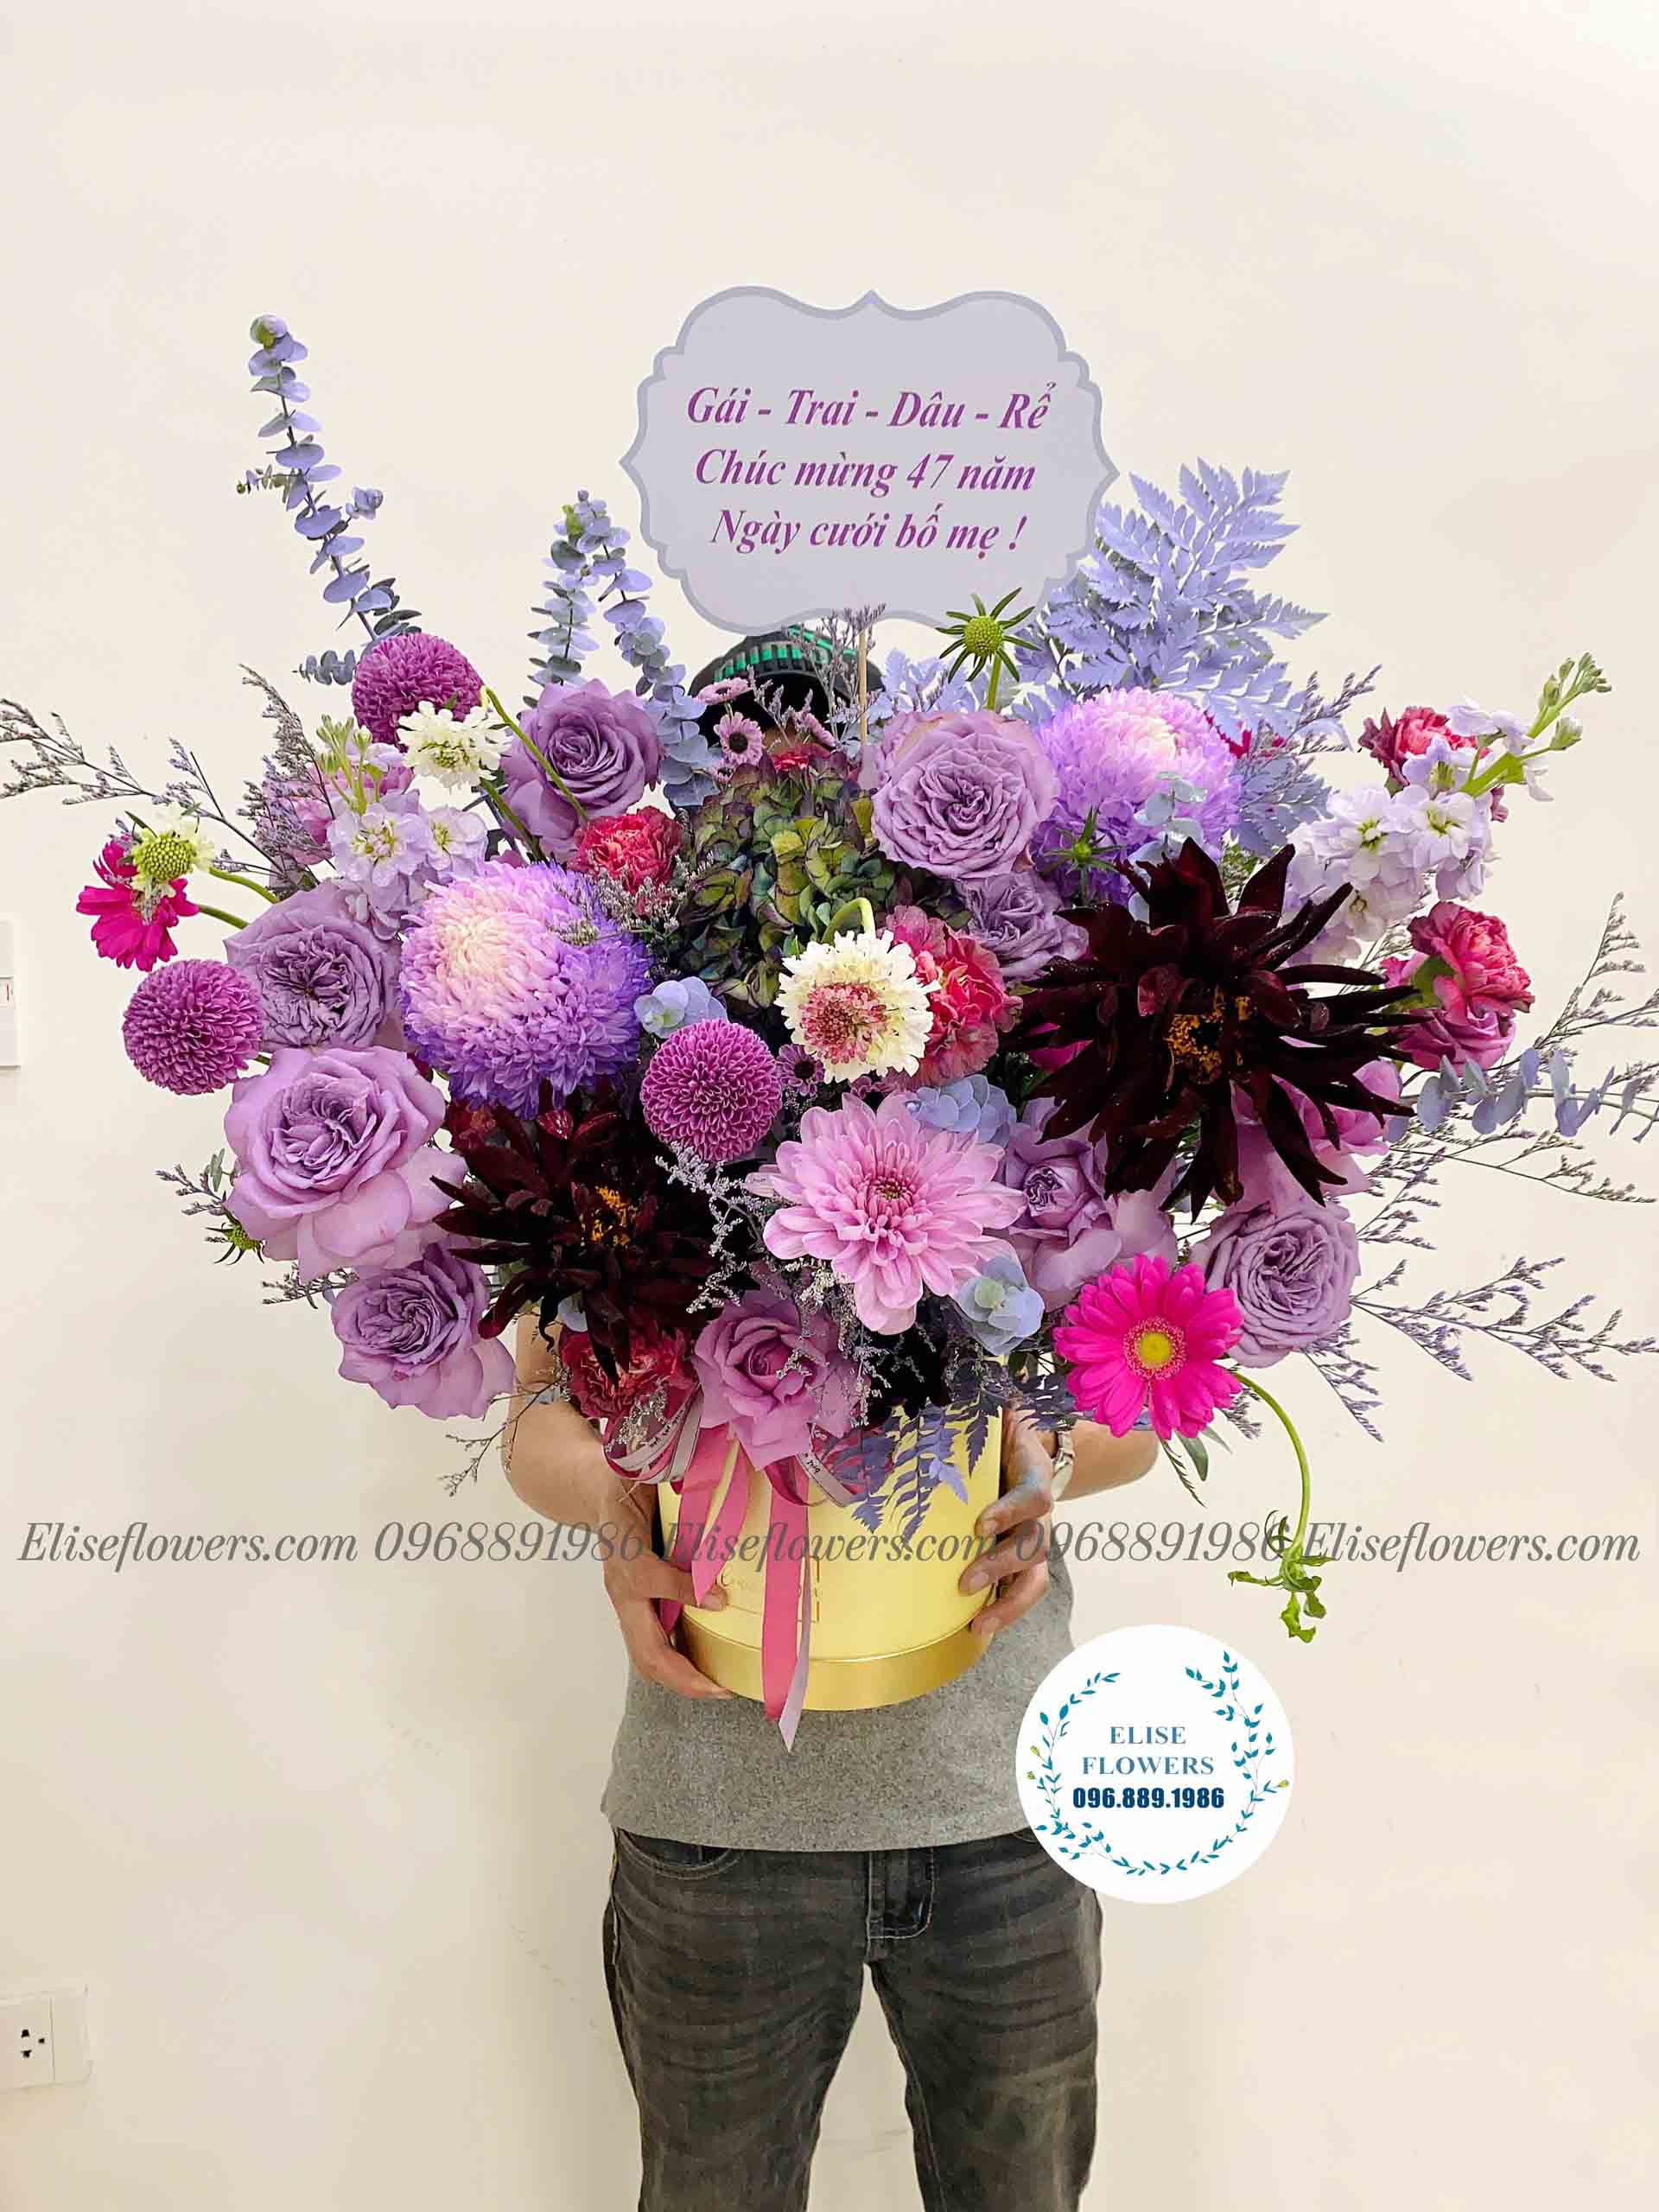 Hộp hoa tím  nhập khẩu chúc mừng kỉ niệm ngày cưới bố mẹ tại Eliseflowers.com